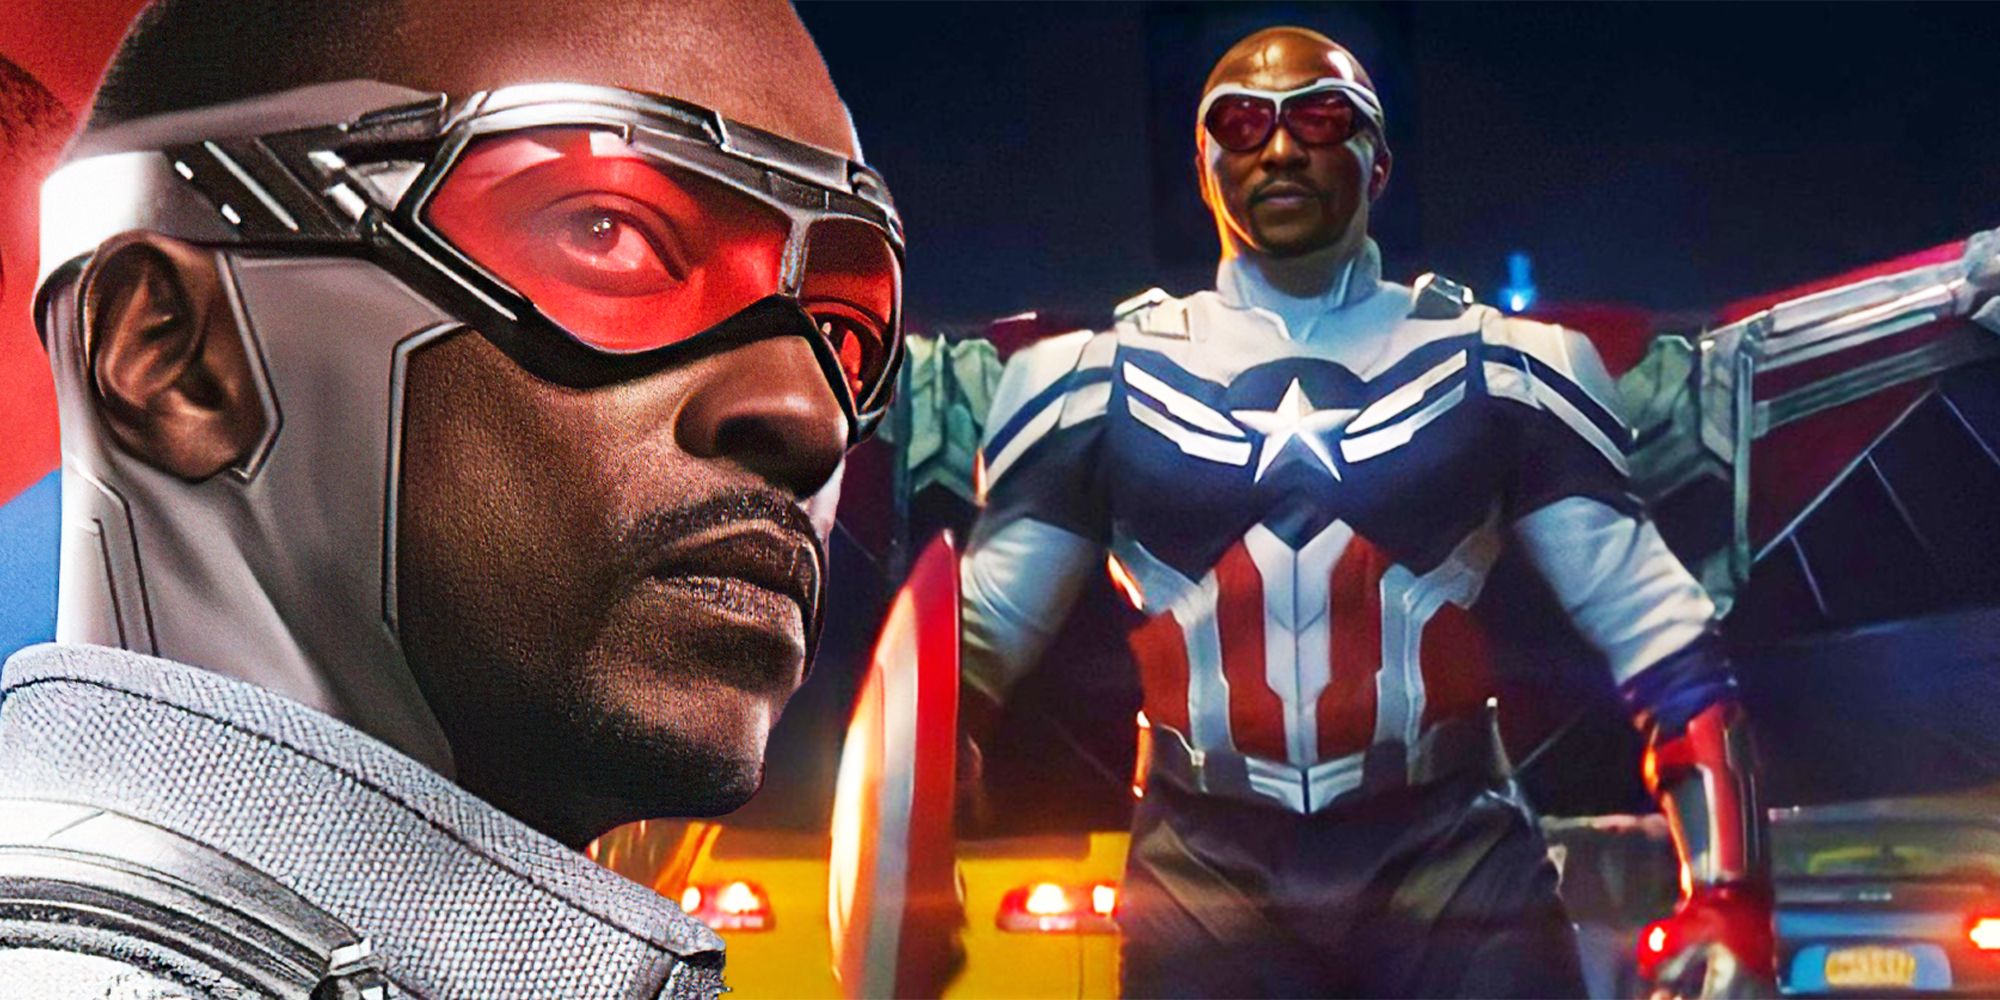 Marvel Phase 4 Telah Mengonfirmasi Penggantian Bucky Barnes dari Captain America 4